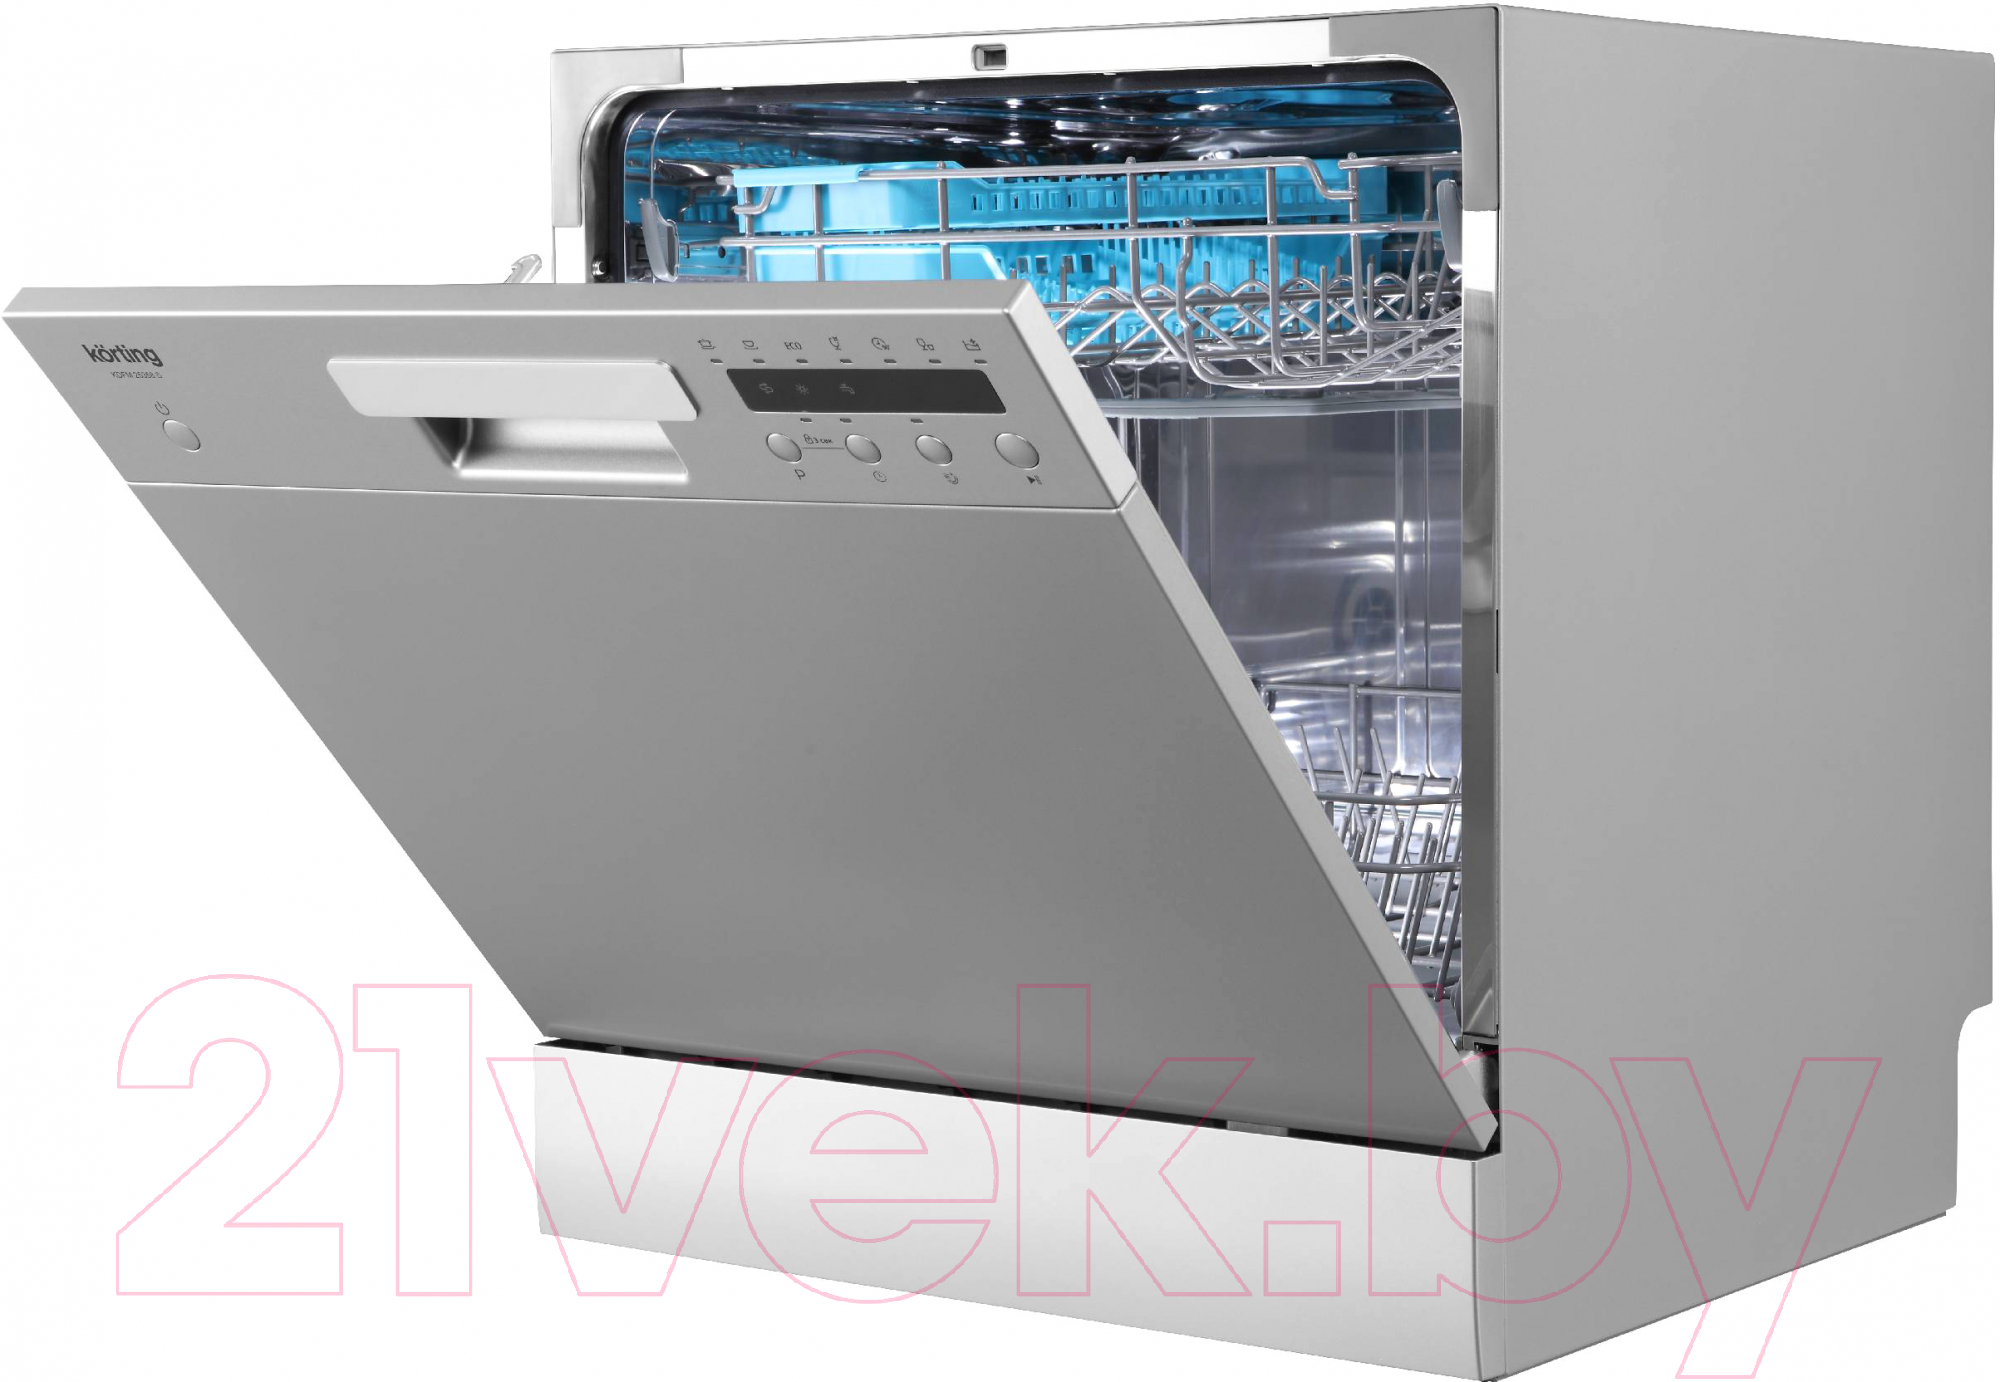 Посудомоечная машина Korting KDFM 25358 S